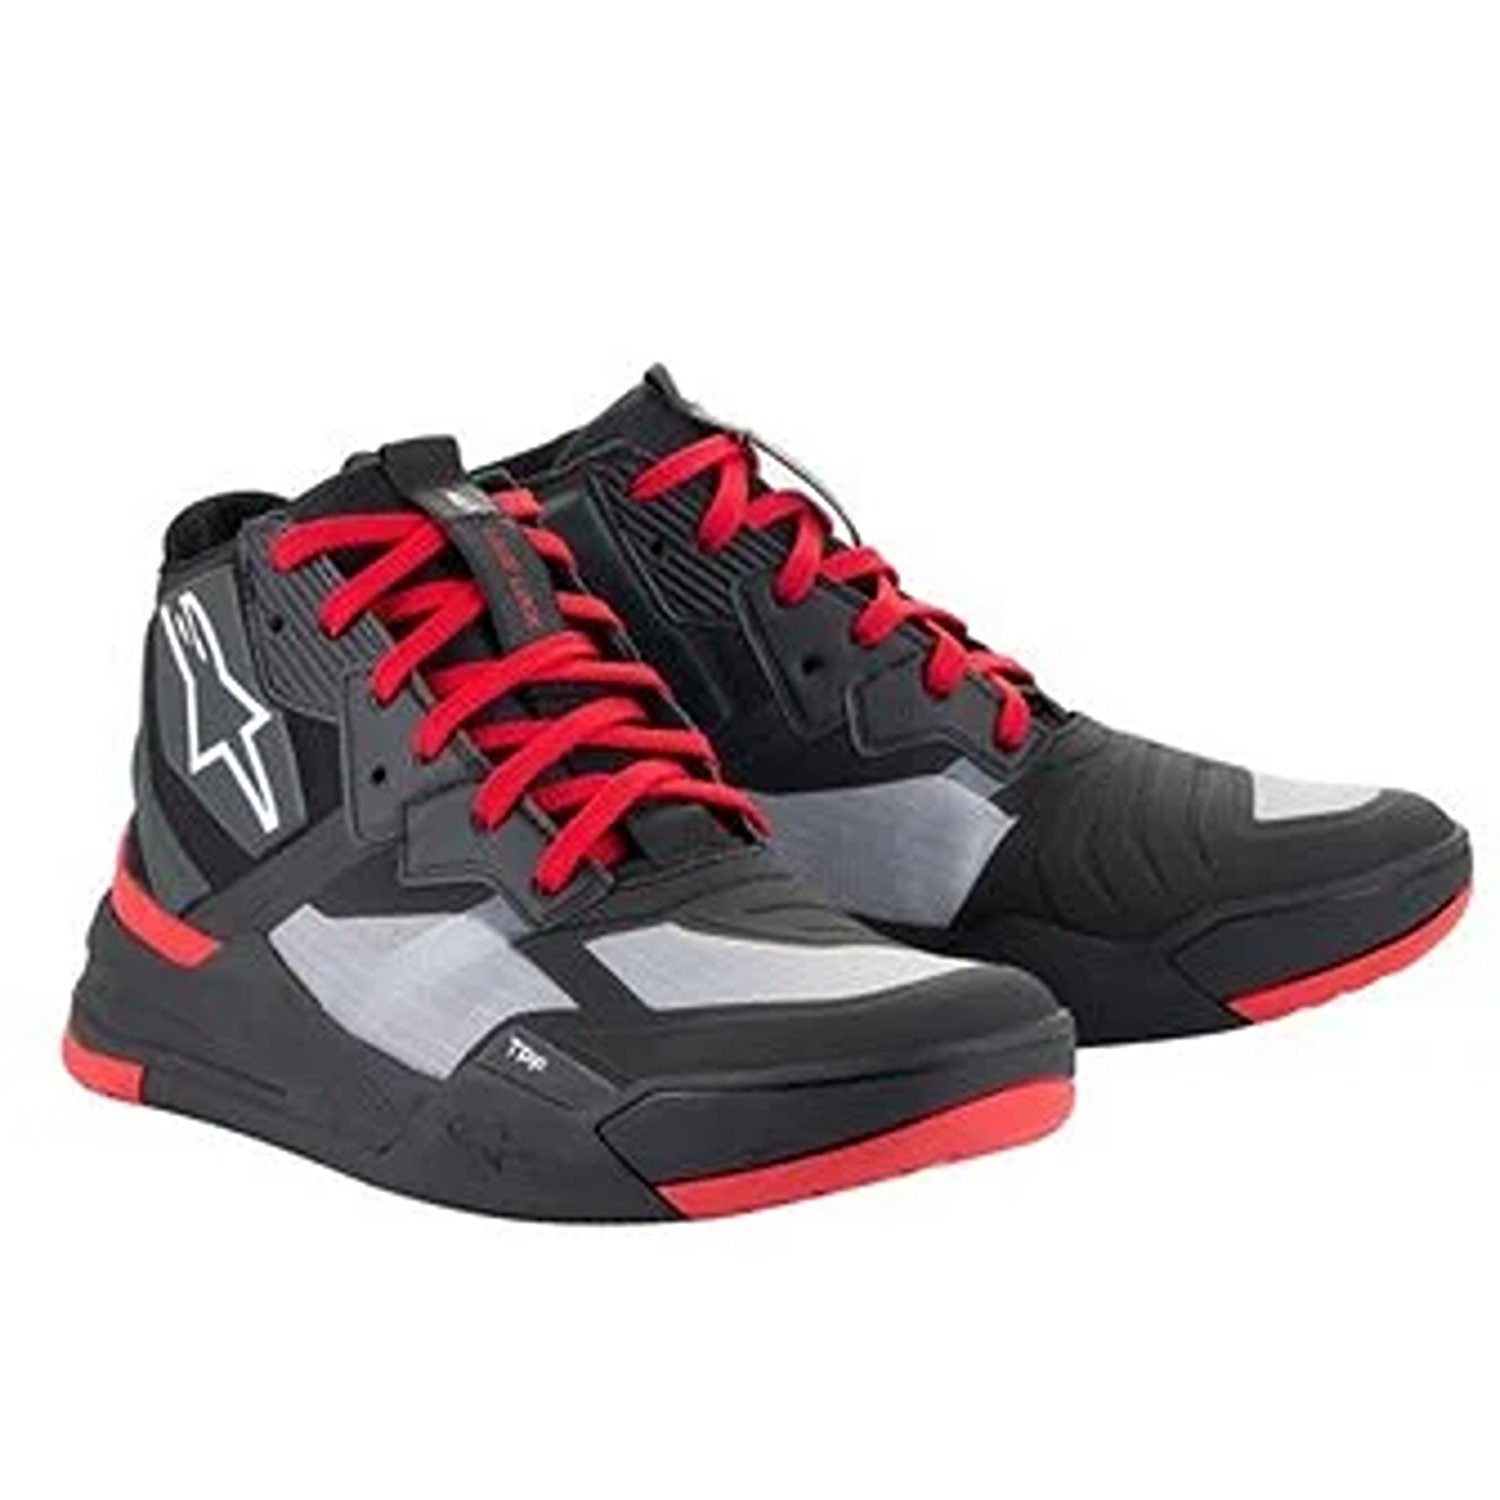 Image of Alpinestars Speedflight Shoes Black Bright Red White Größe US 10